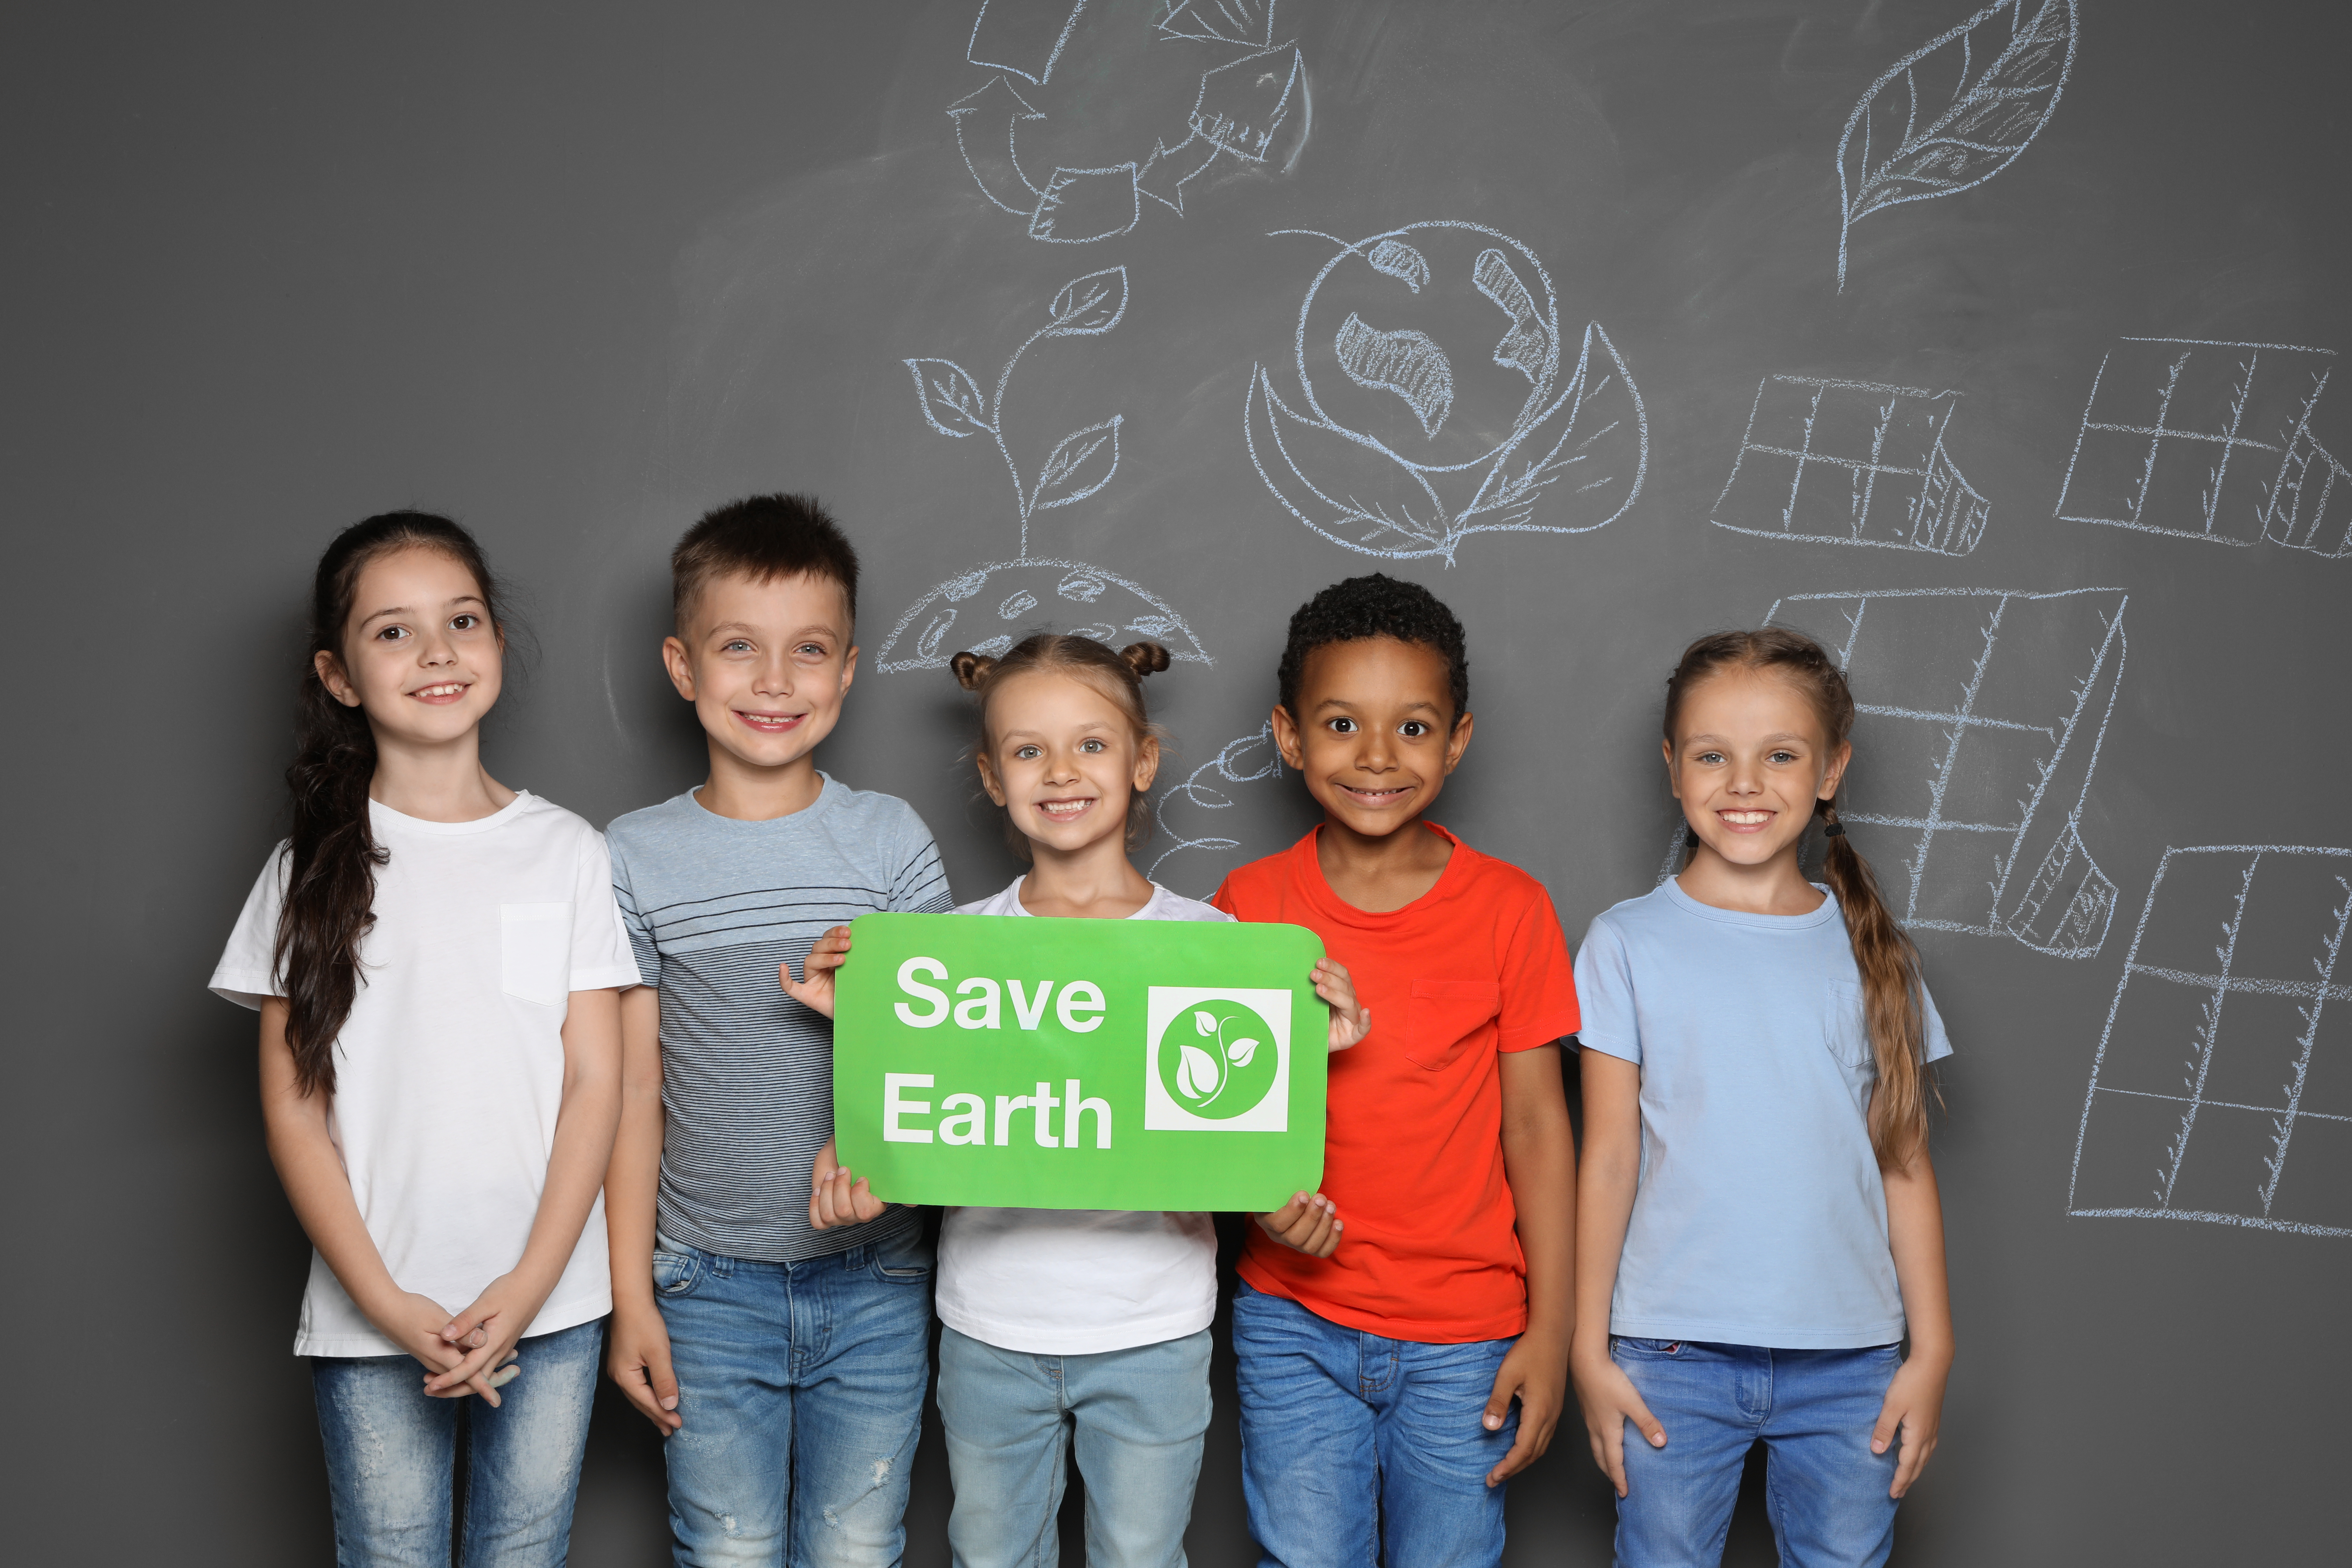 「乾淨紙包回收計劃」是與超過75間的本地及國際中小學合作，透過參與回收活動或者講座提升學生的環保意識。© New Africa